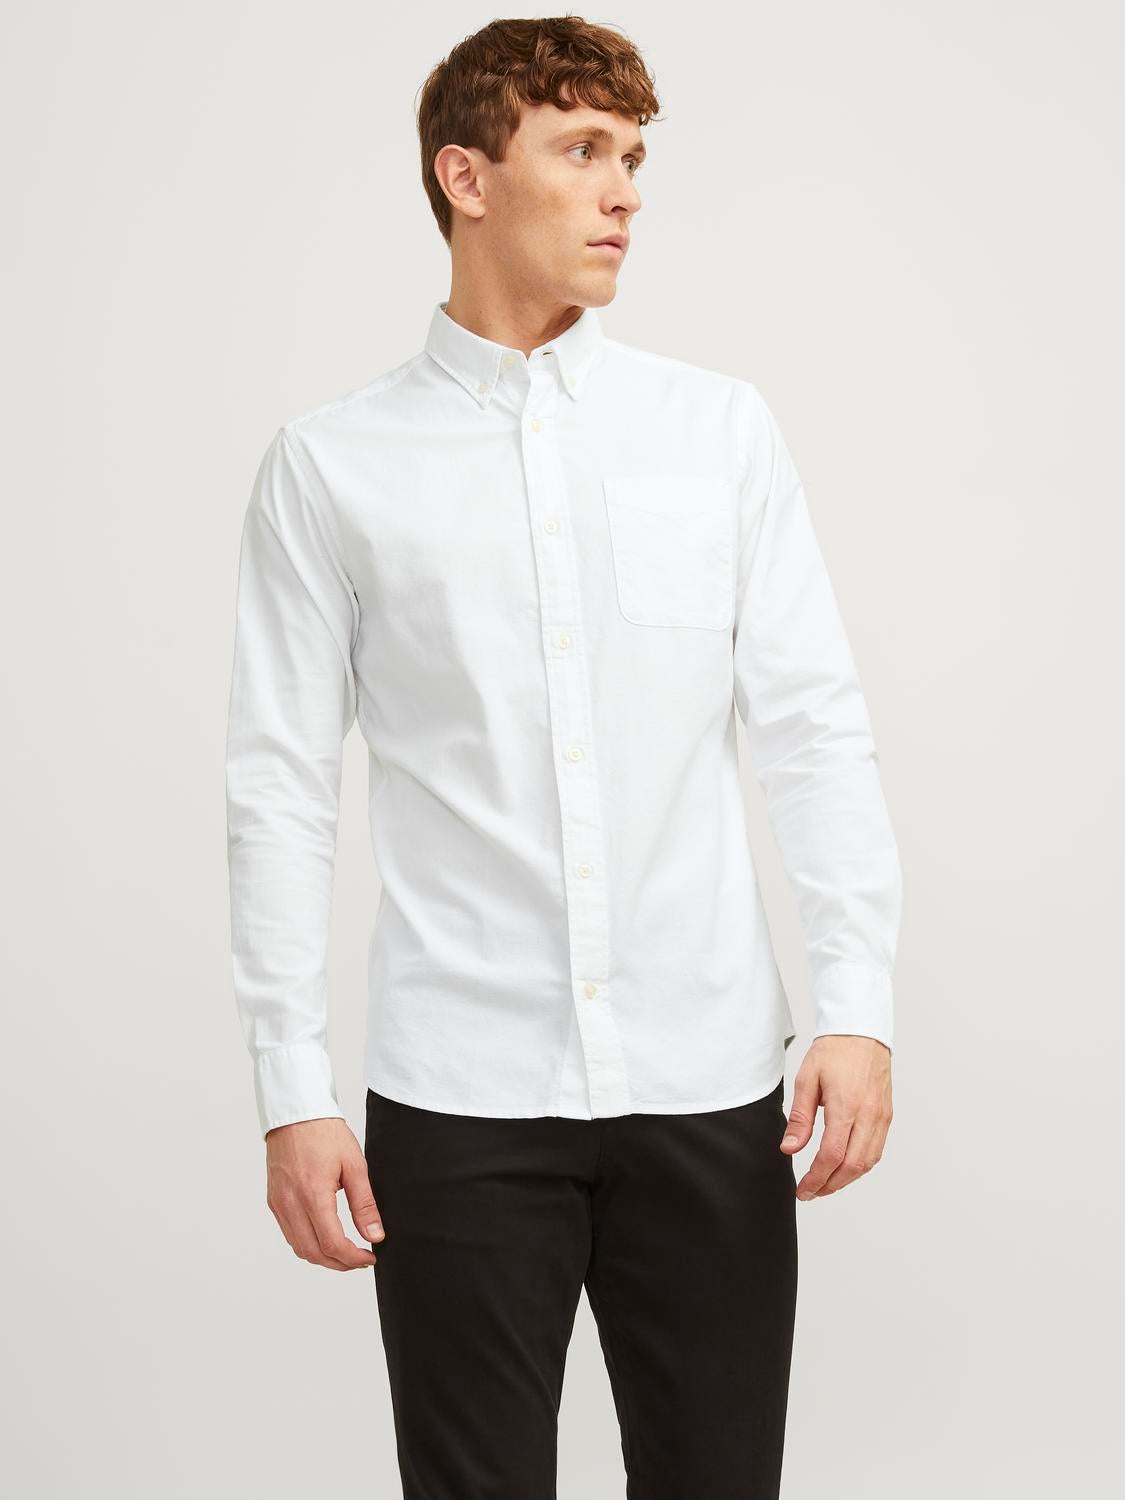 HERREN Hemden & T-Shirts Elegant Weiß XL Jack & Jones Hemd Rabatt 58 % 